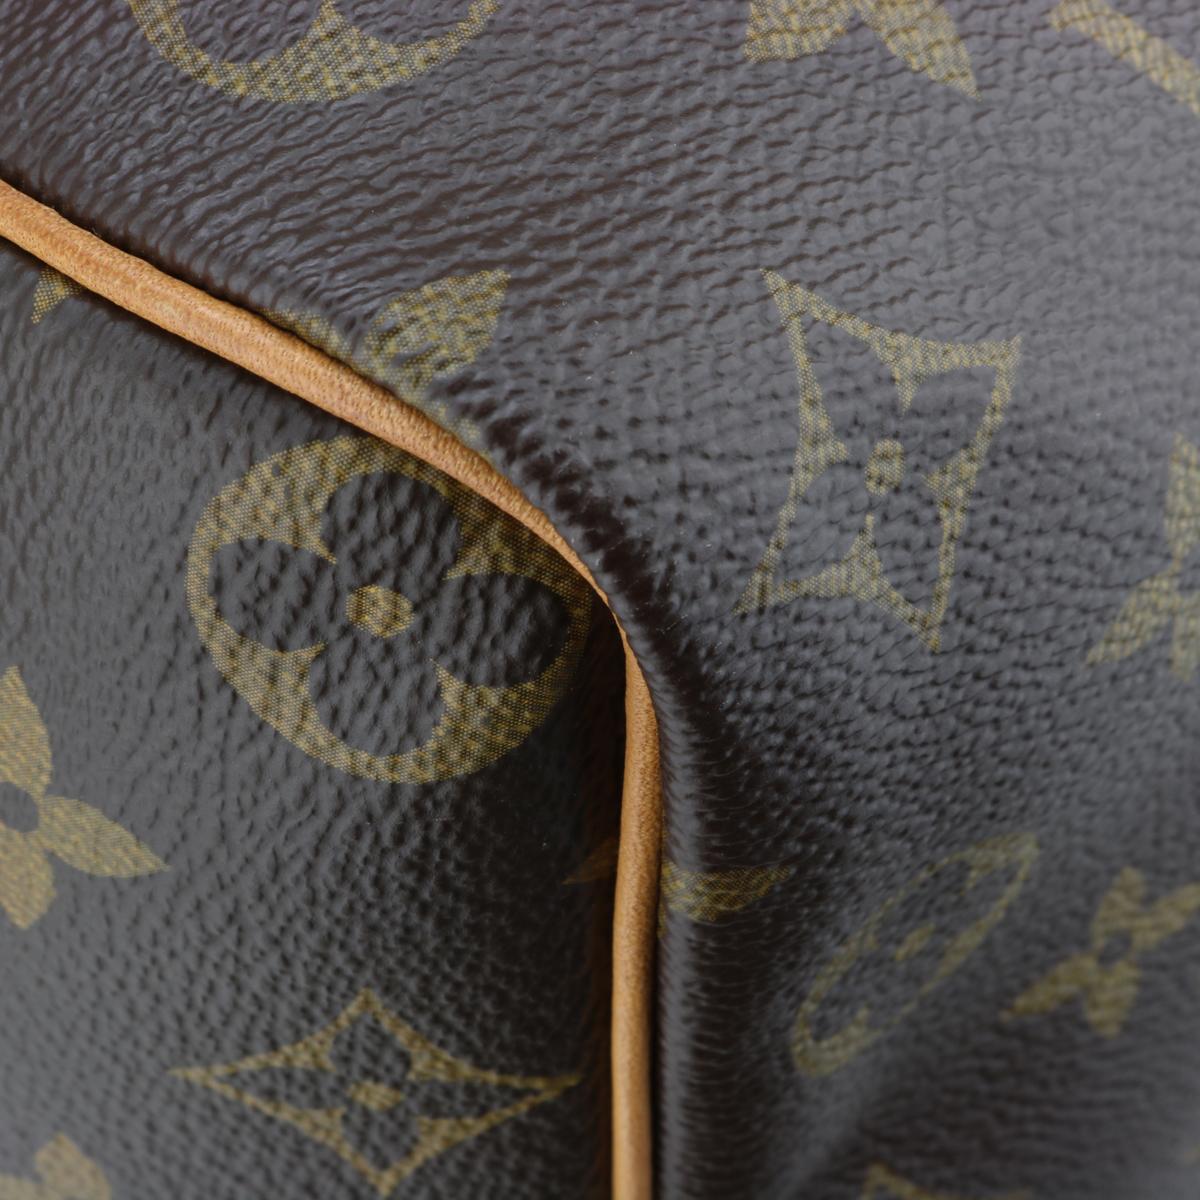 Louis Vuitton Speedy 35 Bag in Monogram 2018 3